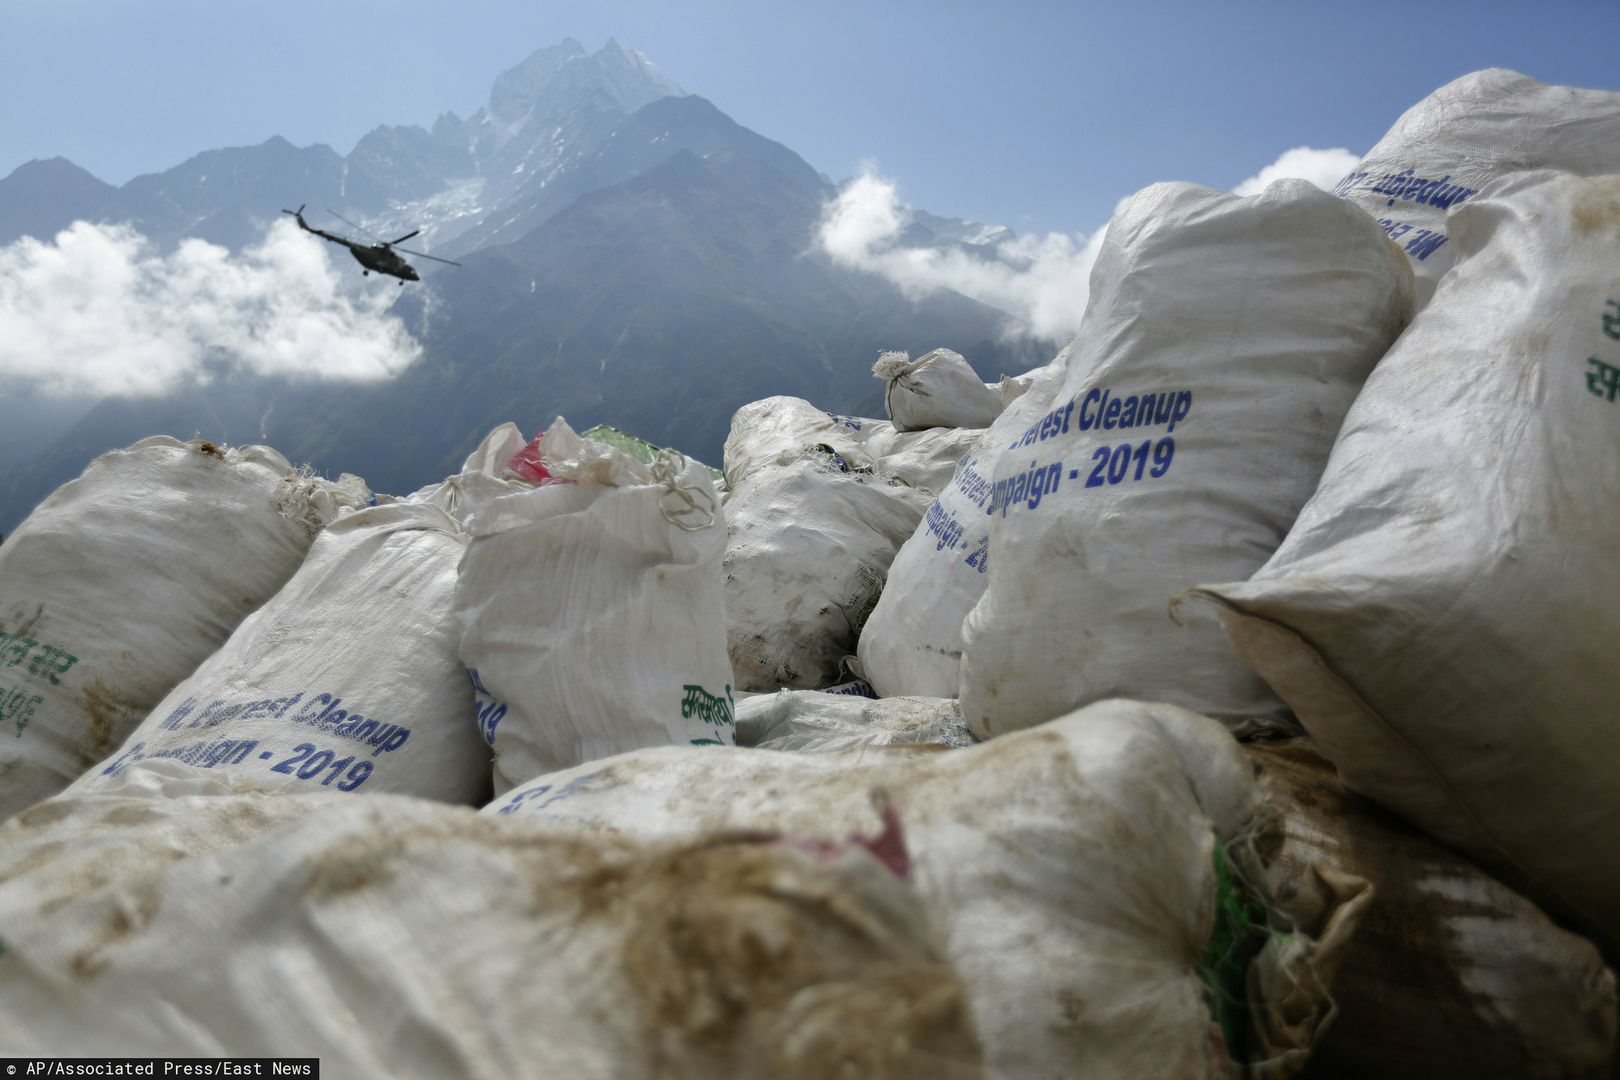 Władze Nepalu planują wielkie sprzątanie Mount Everest